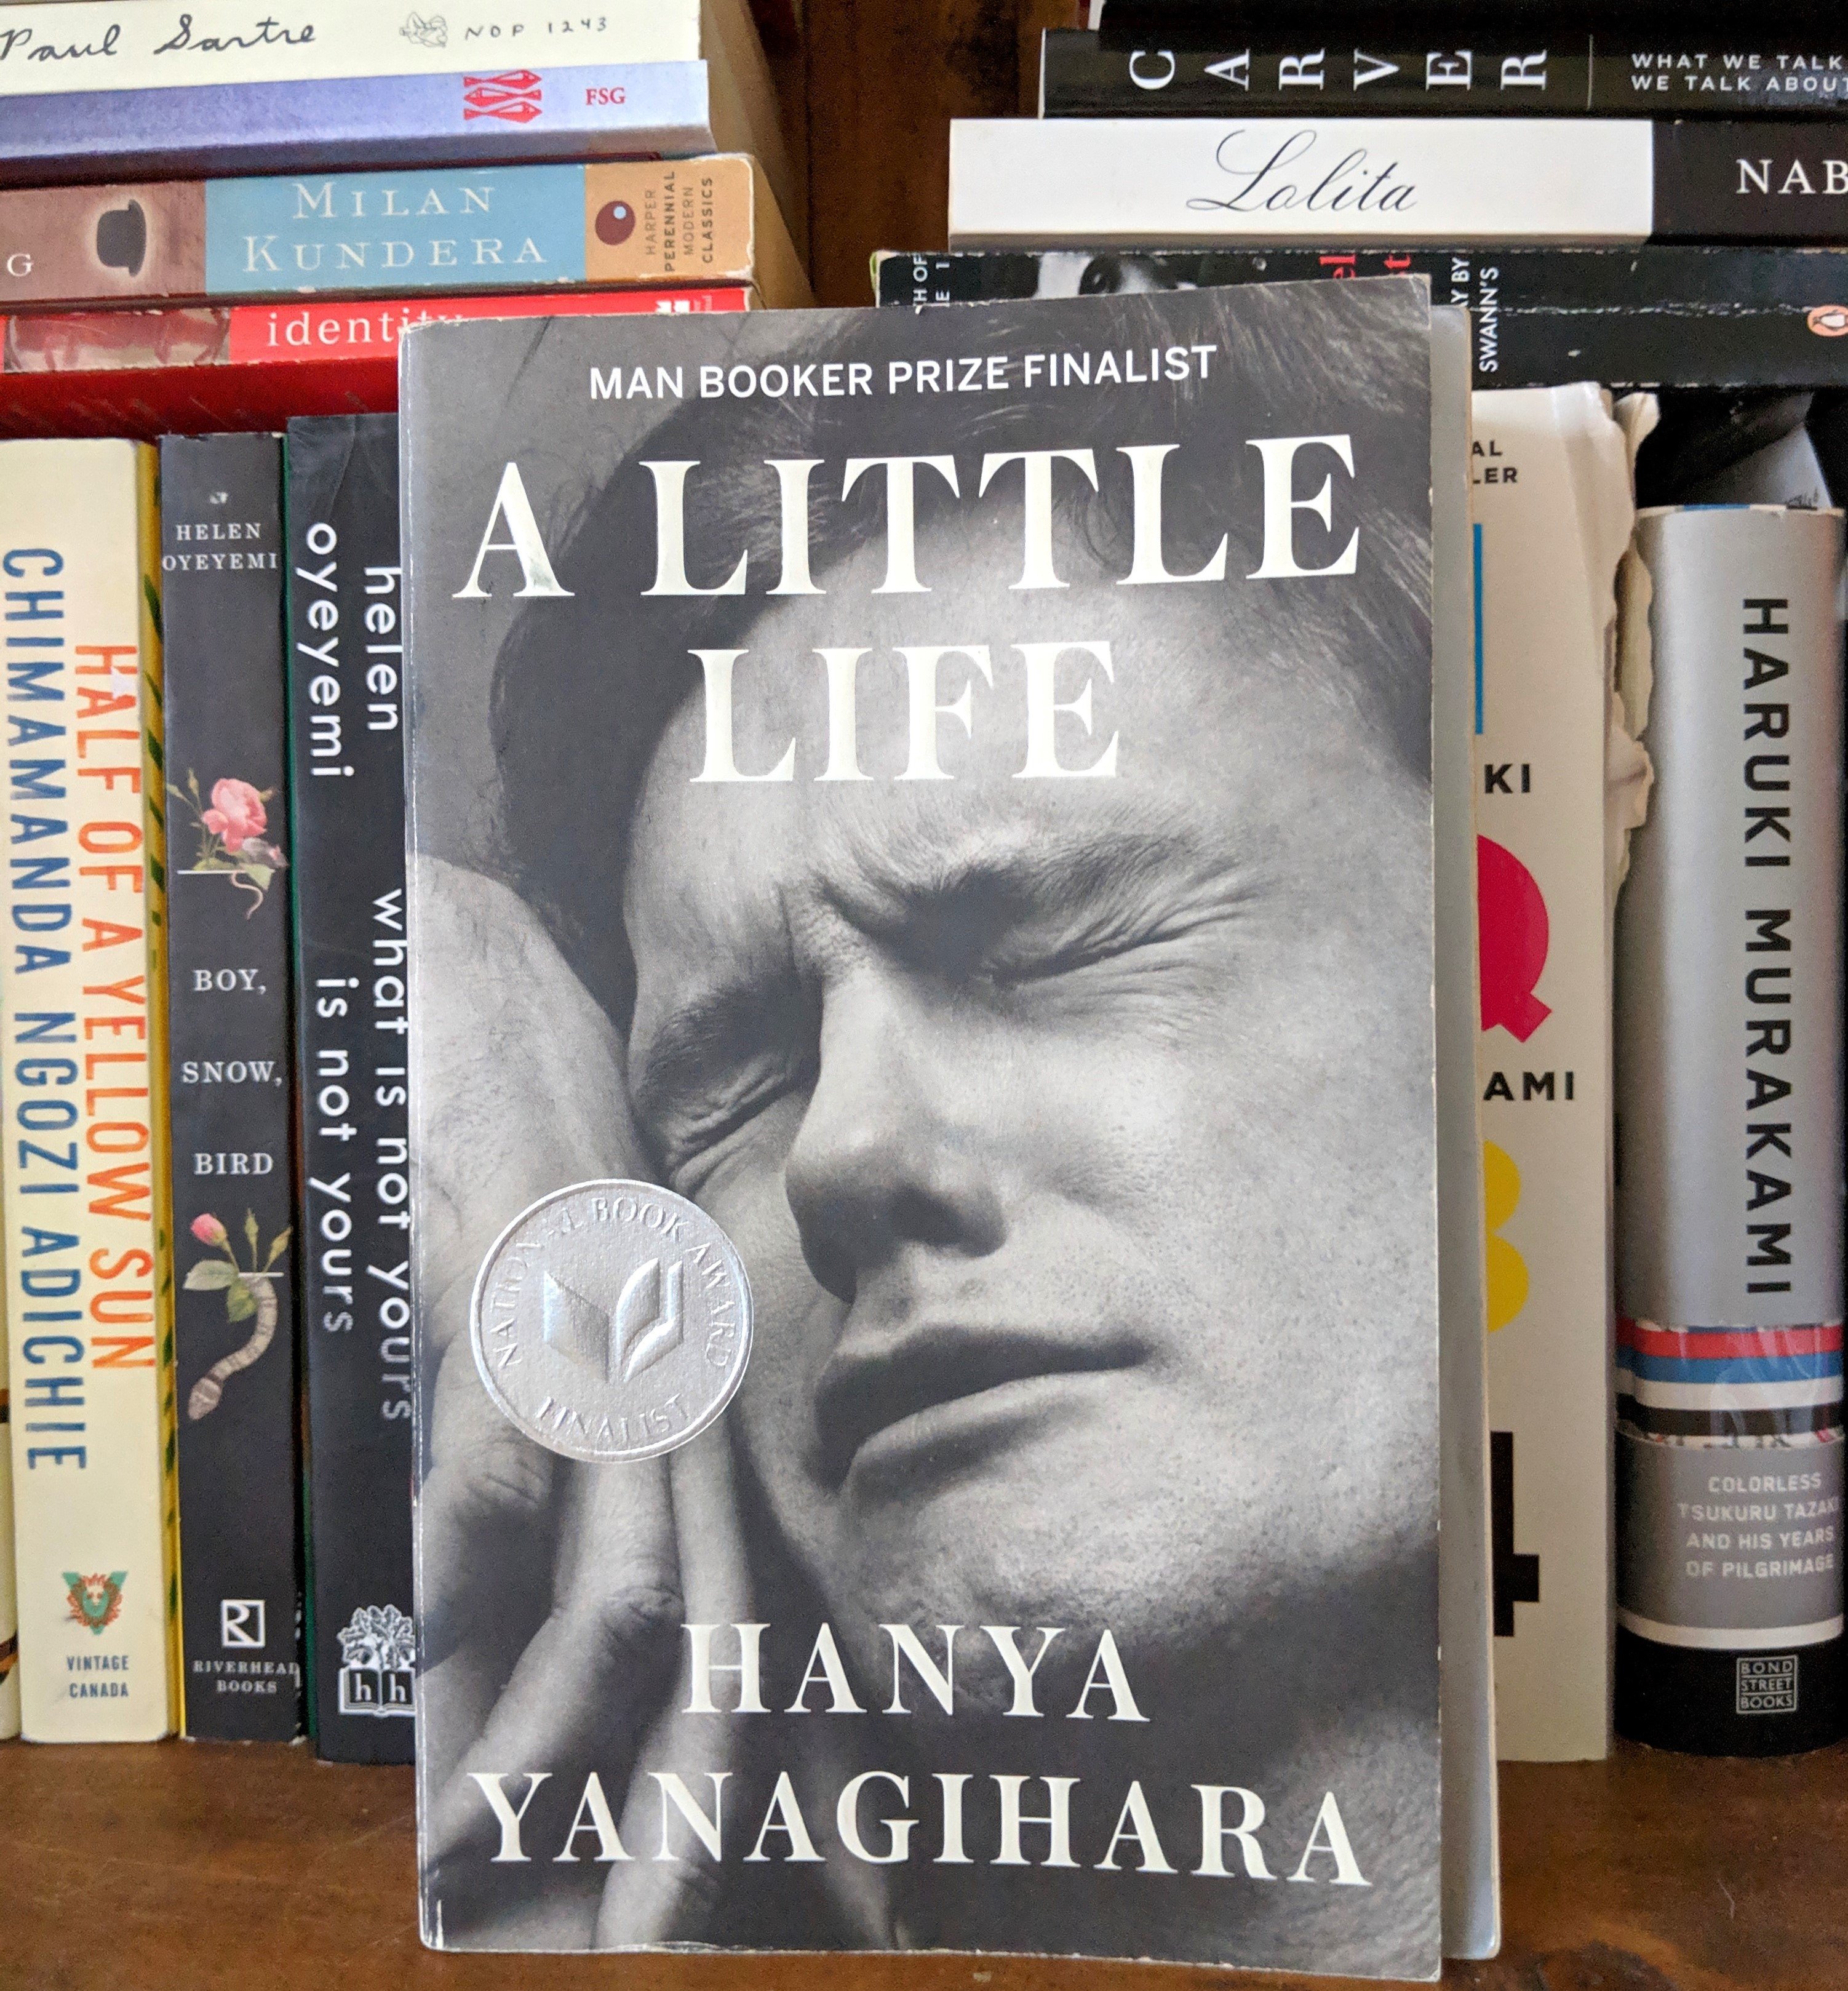 Little life книга. A little Life книга. A little Life Cover. The little Life hanya Yanagihara обложка. Жизнь как книга.